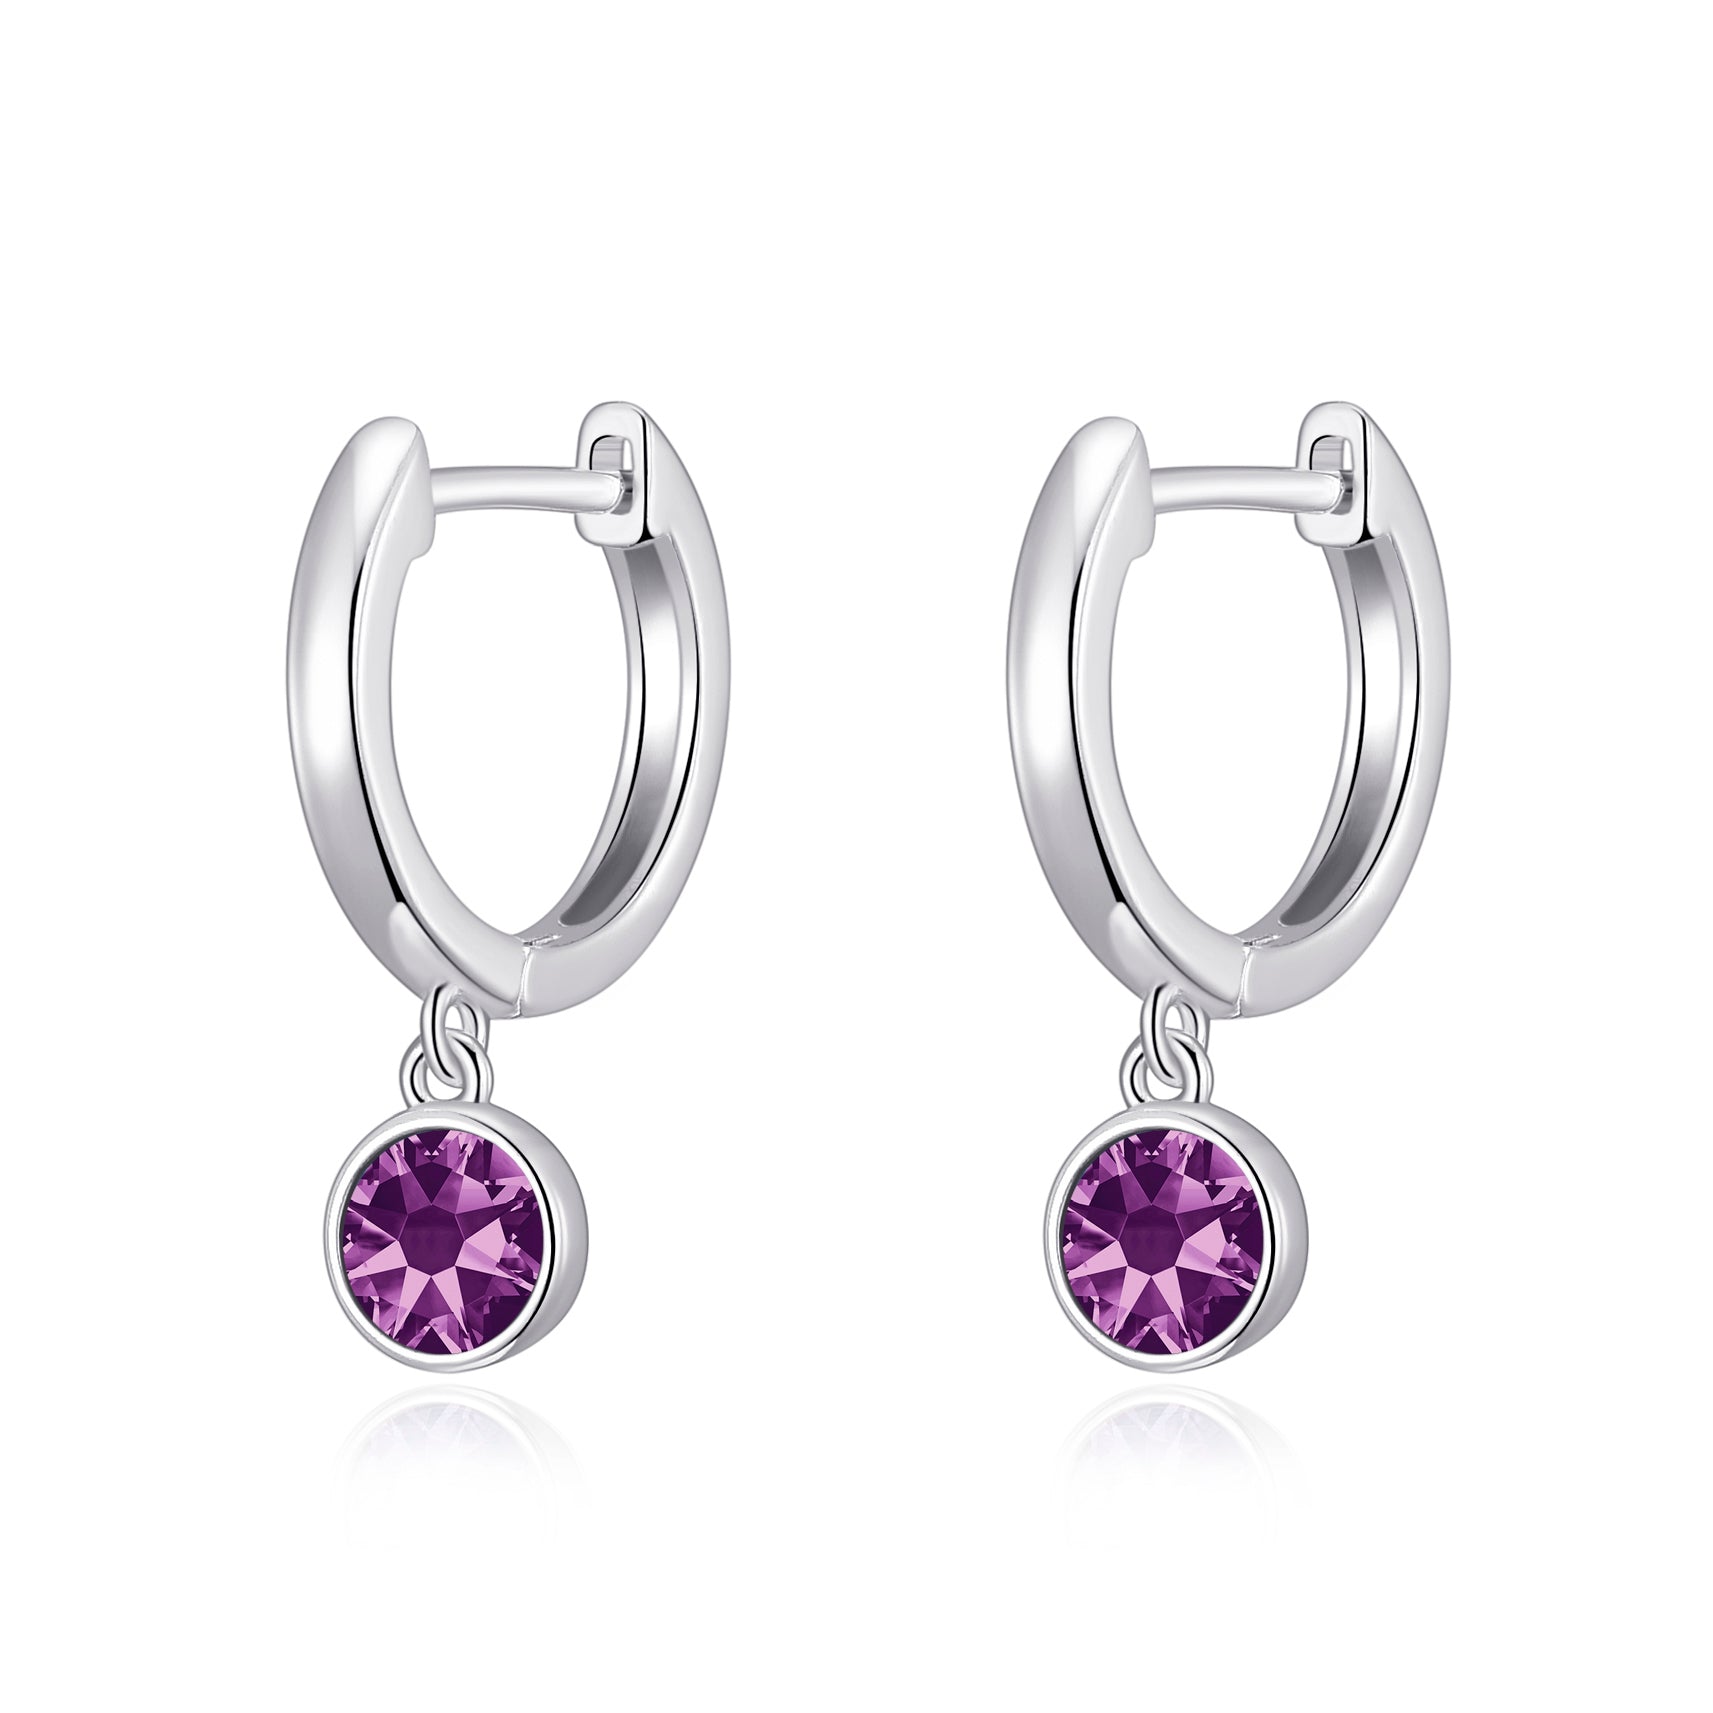 Purple Crystal Hoop Earrings Created with Zircondia® Crystals by Philip Jones Jewellery